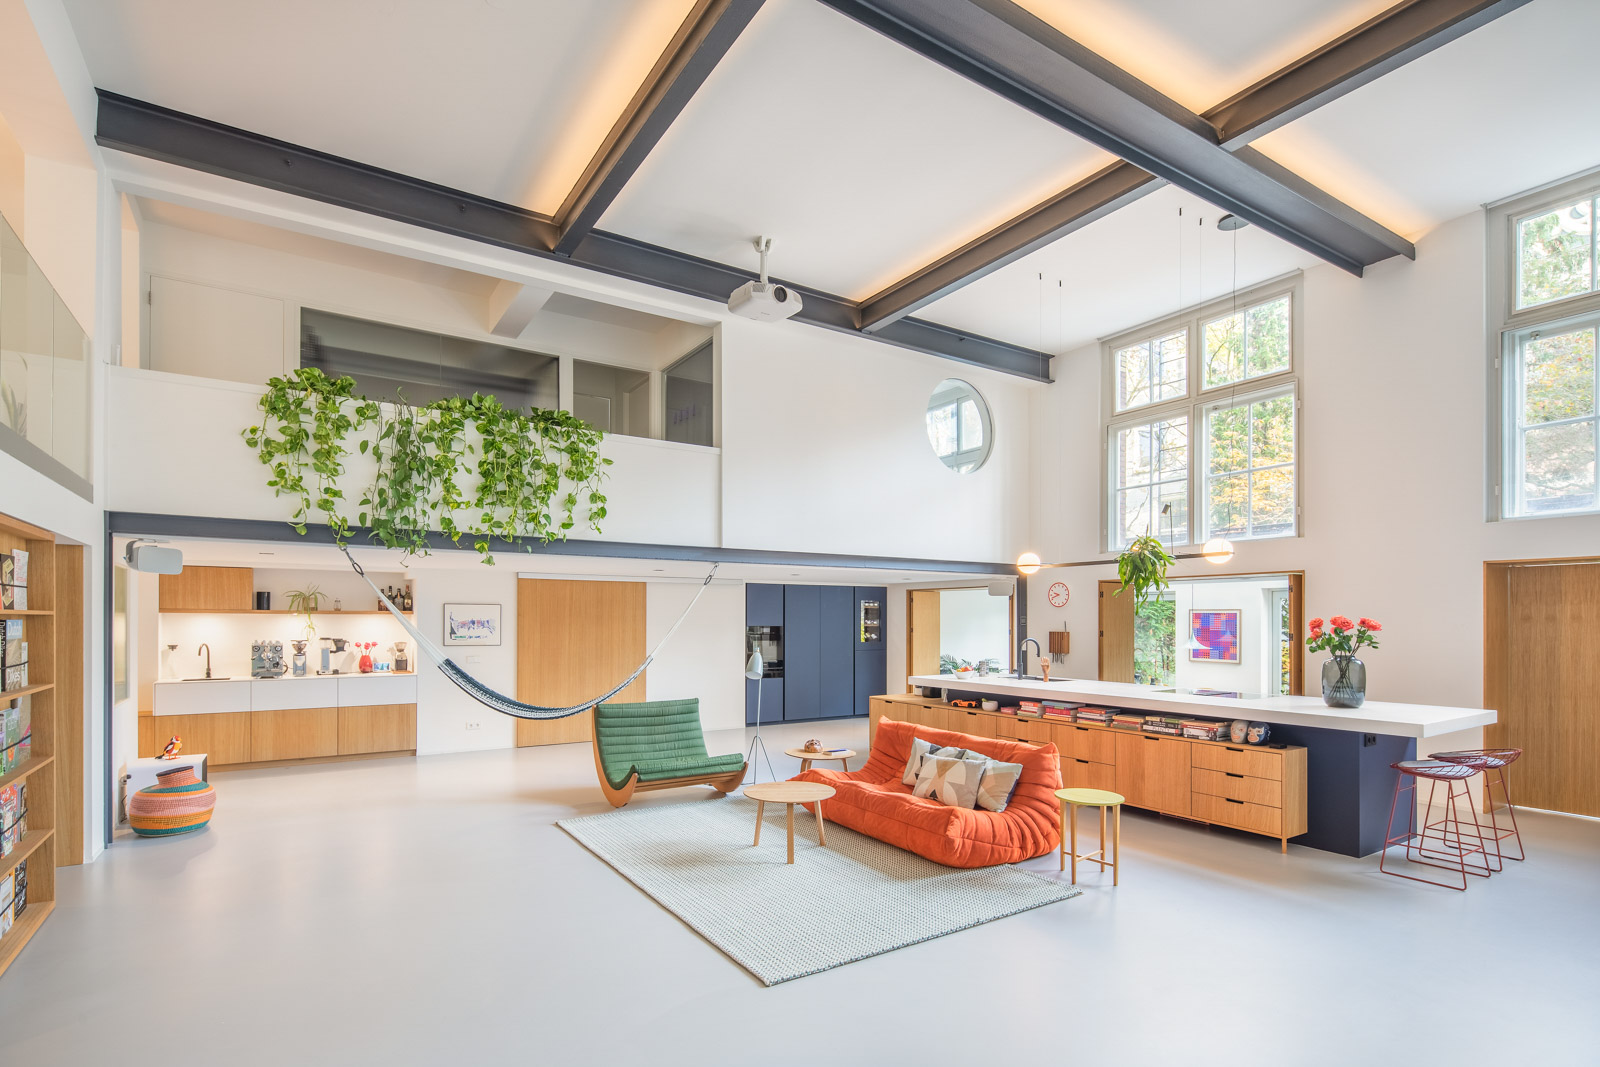 兼作摄影工作室,荷兰2层开放式空间的住宅设计